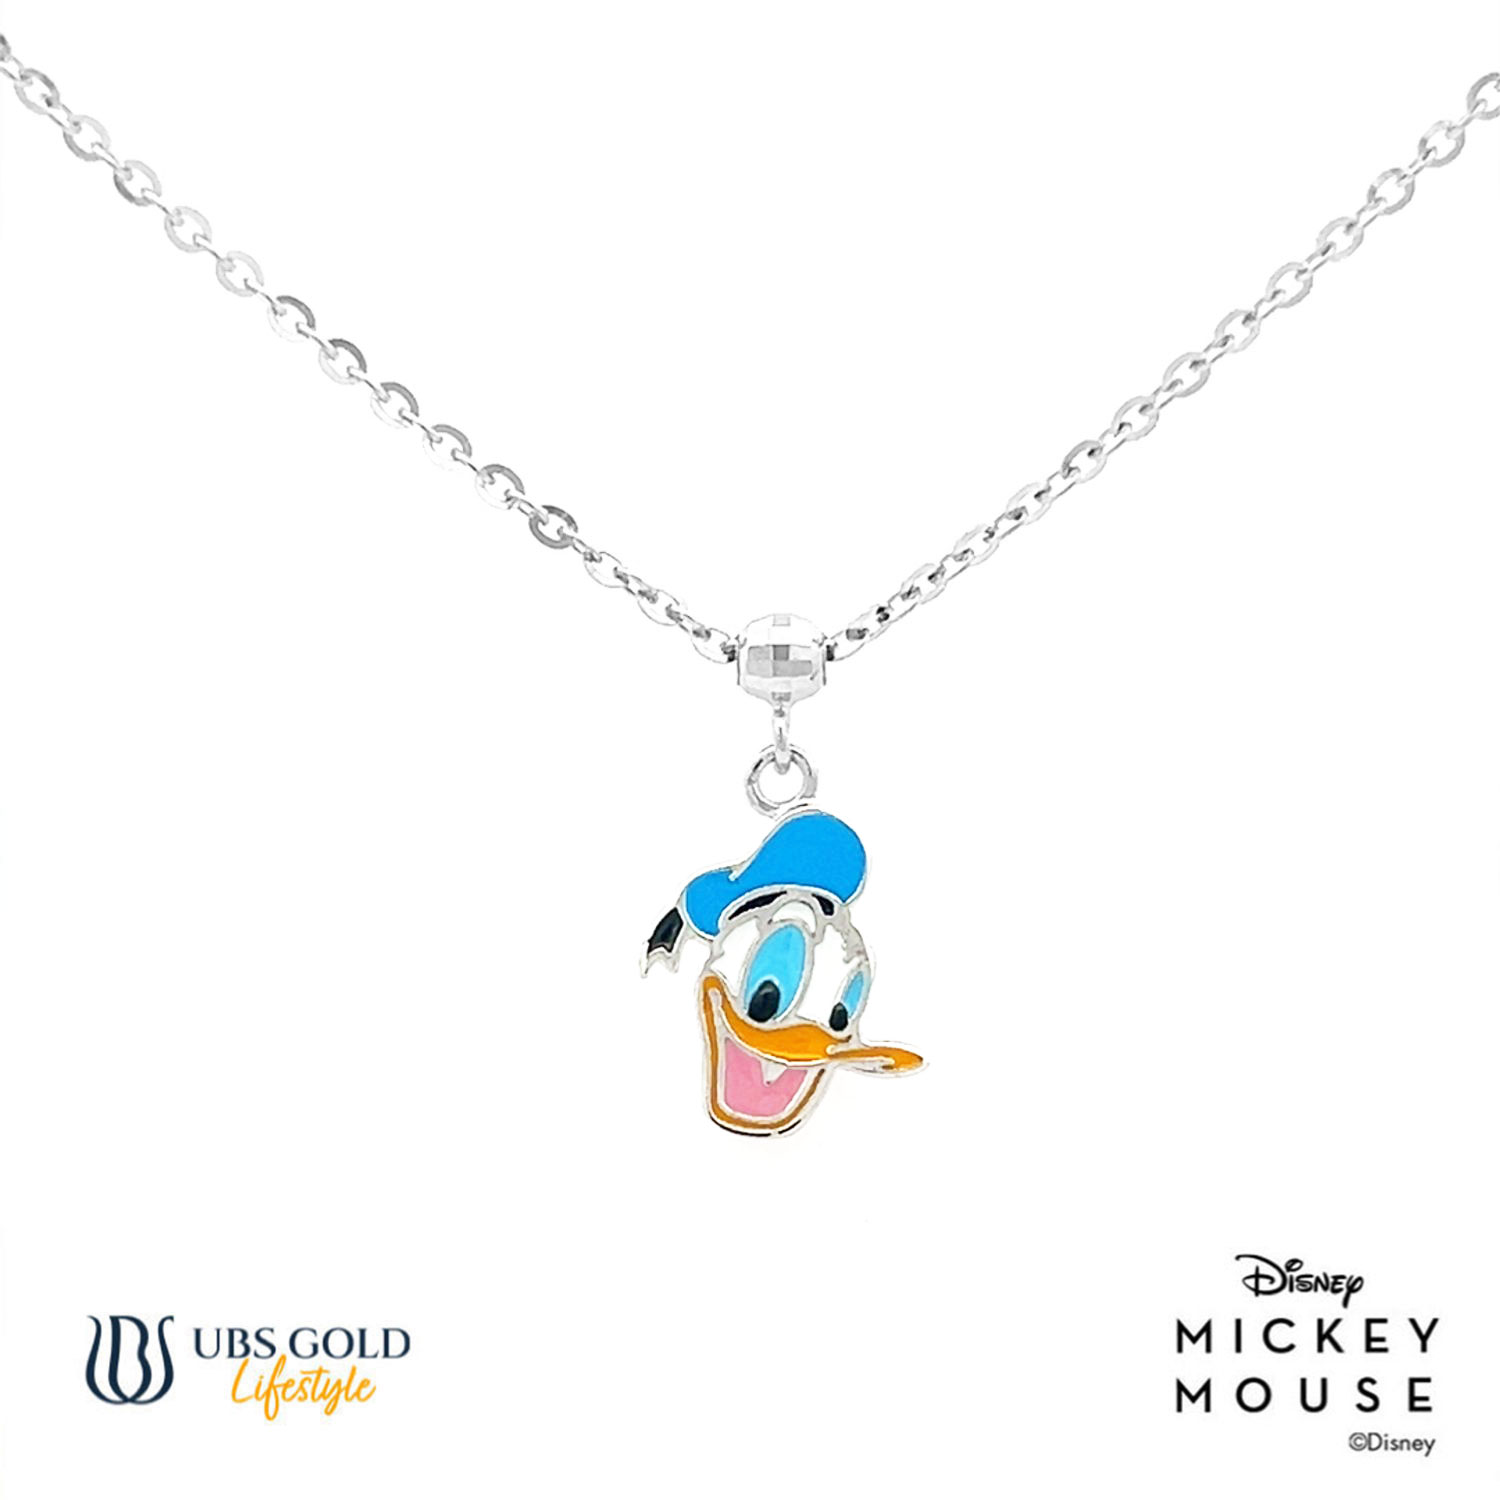 UBS Gold Kalung Emas Anak Disney Donald Duck - Kky0100 - 17K